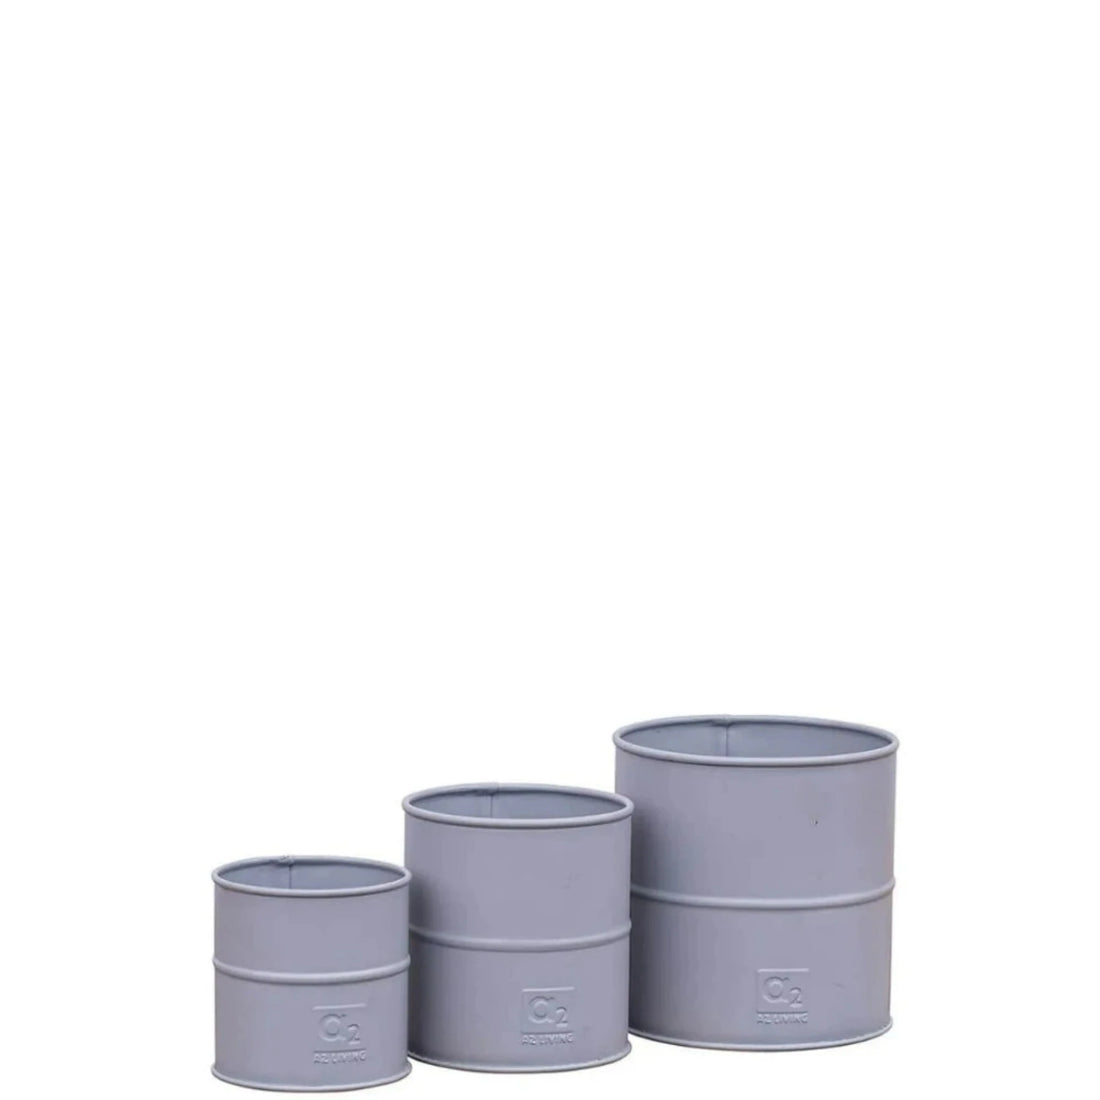 Dansk A2 Living grå urtepotter i tre forskellige størrelser. Du køber alle tre potter i et sæt.